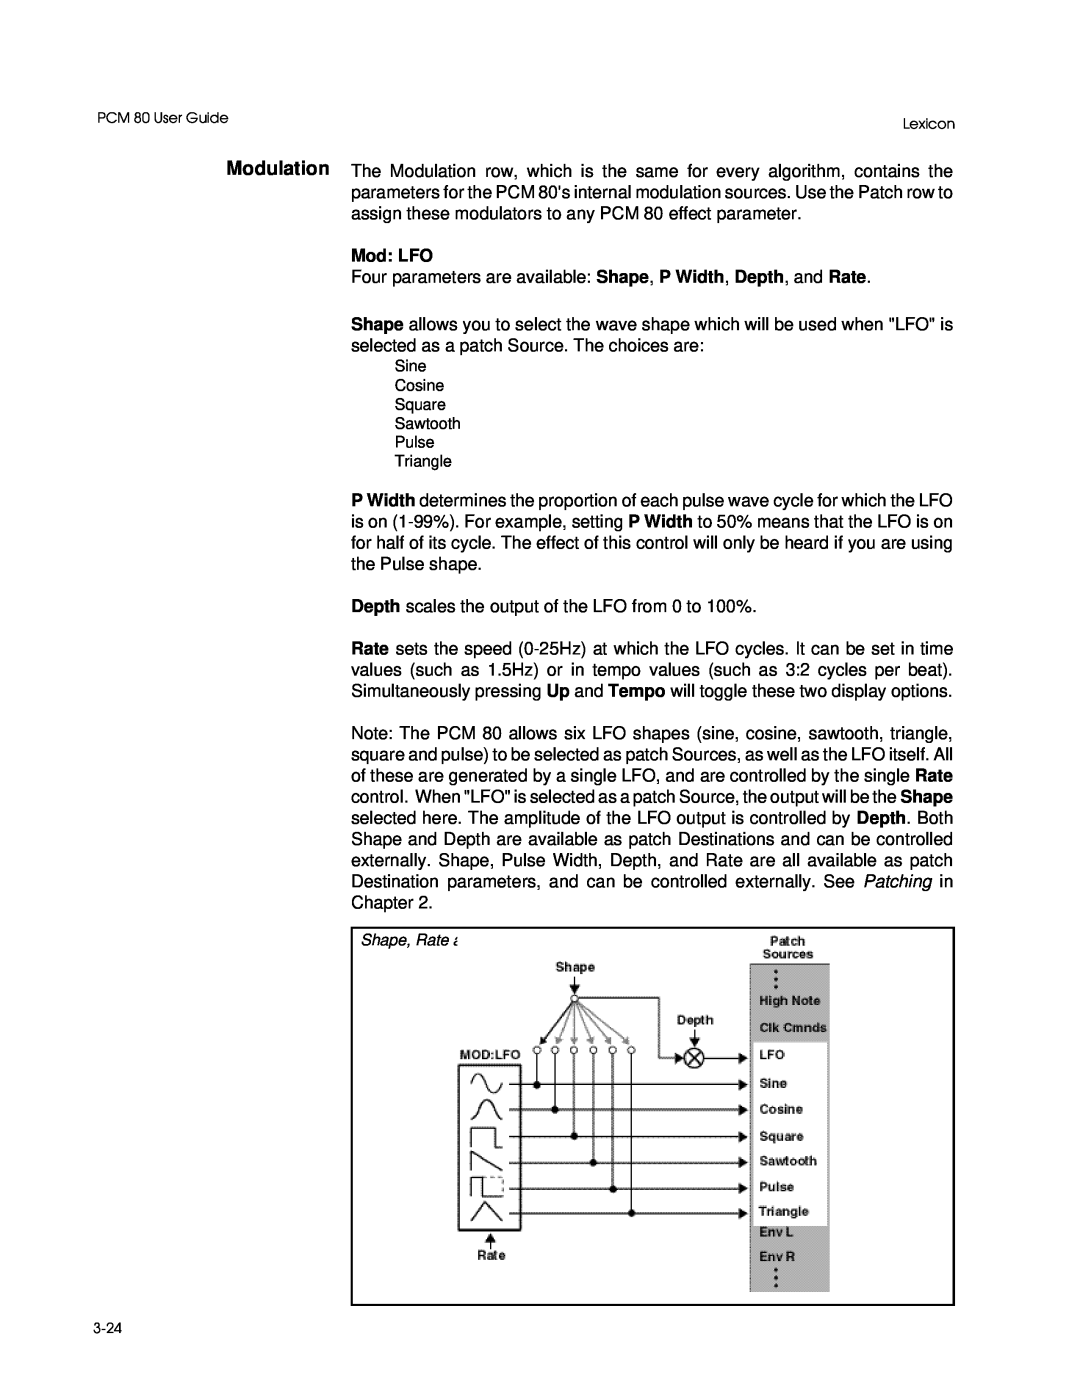 Lexicon PCM 80 manual Mod: LFO 